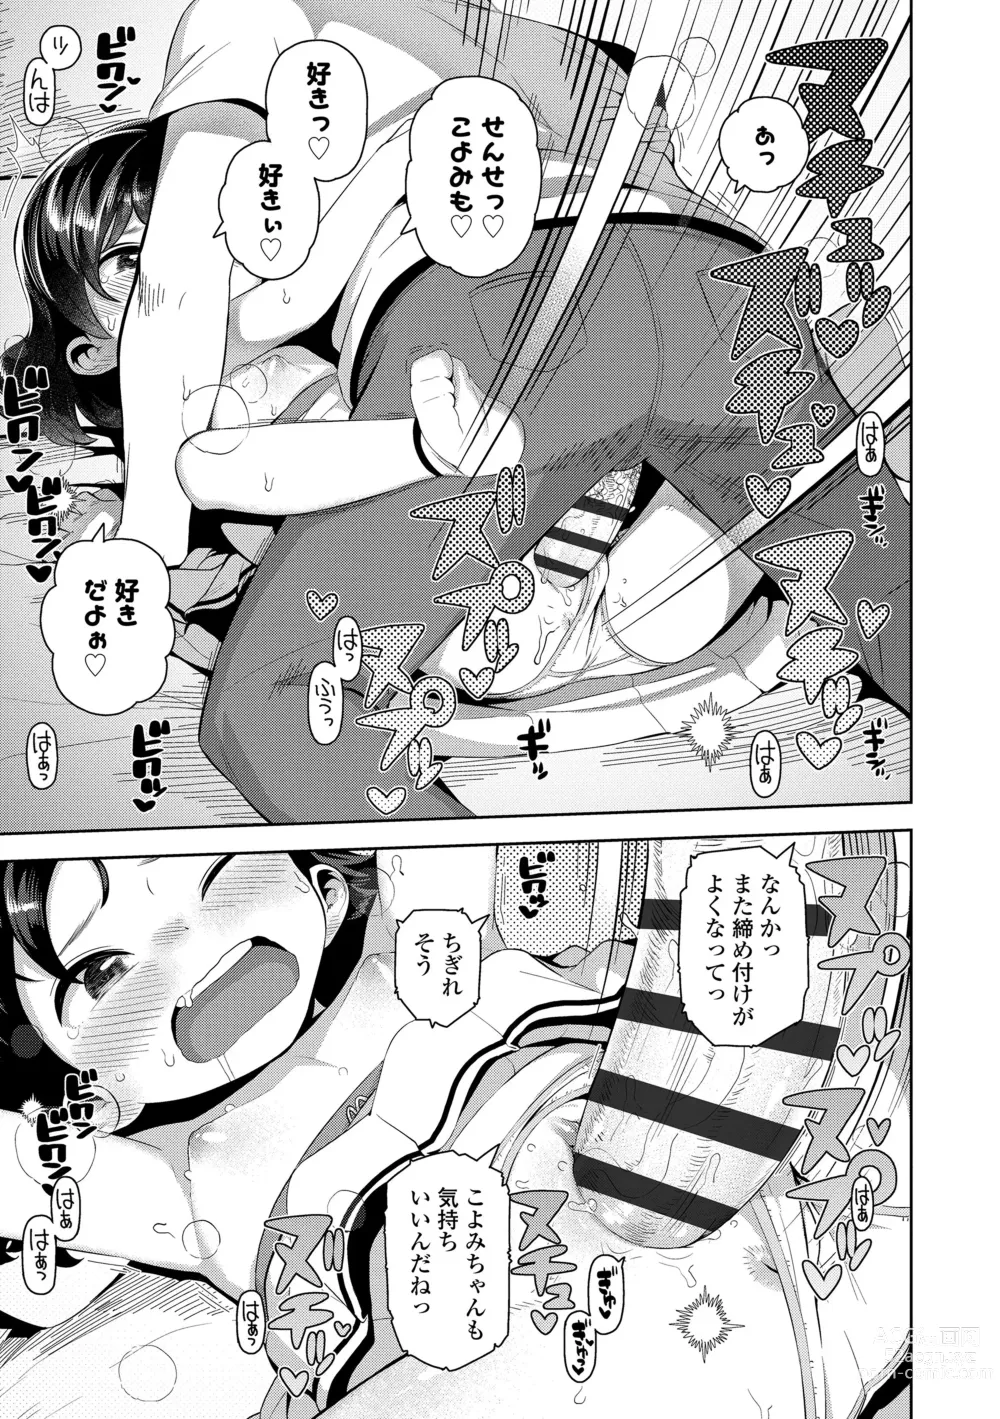 Page 167 of manga Chitchakute ohisama no nioi